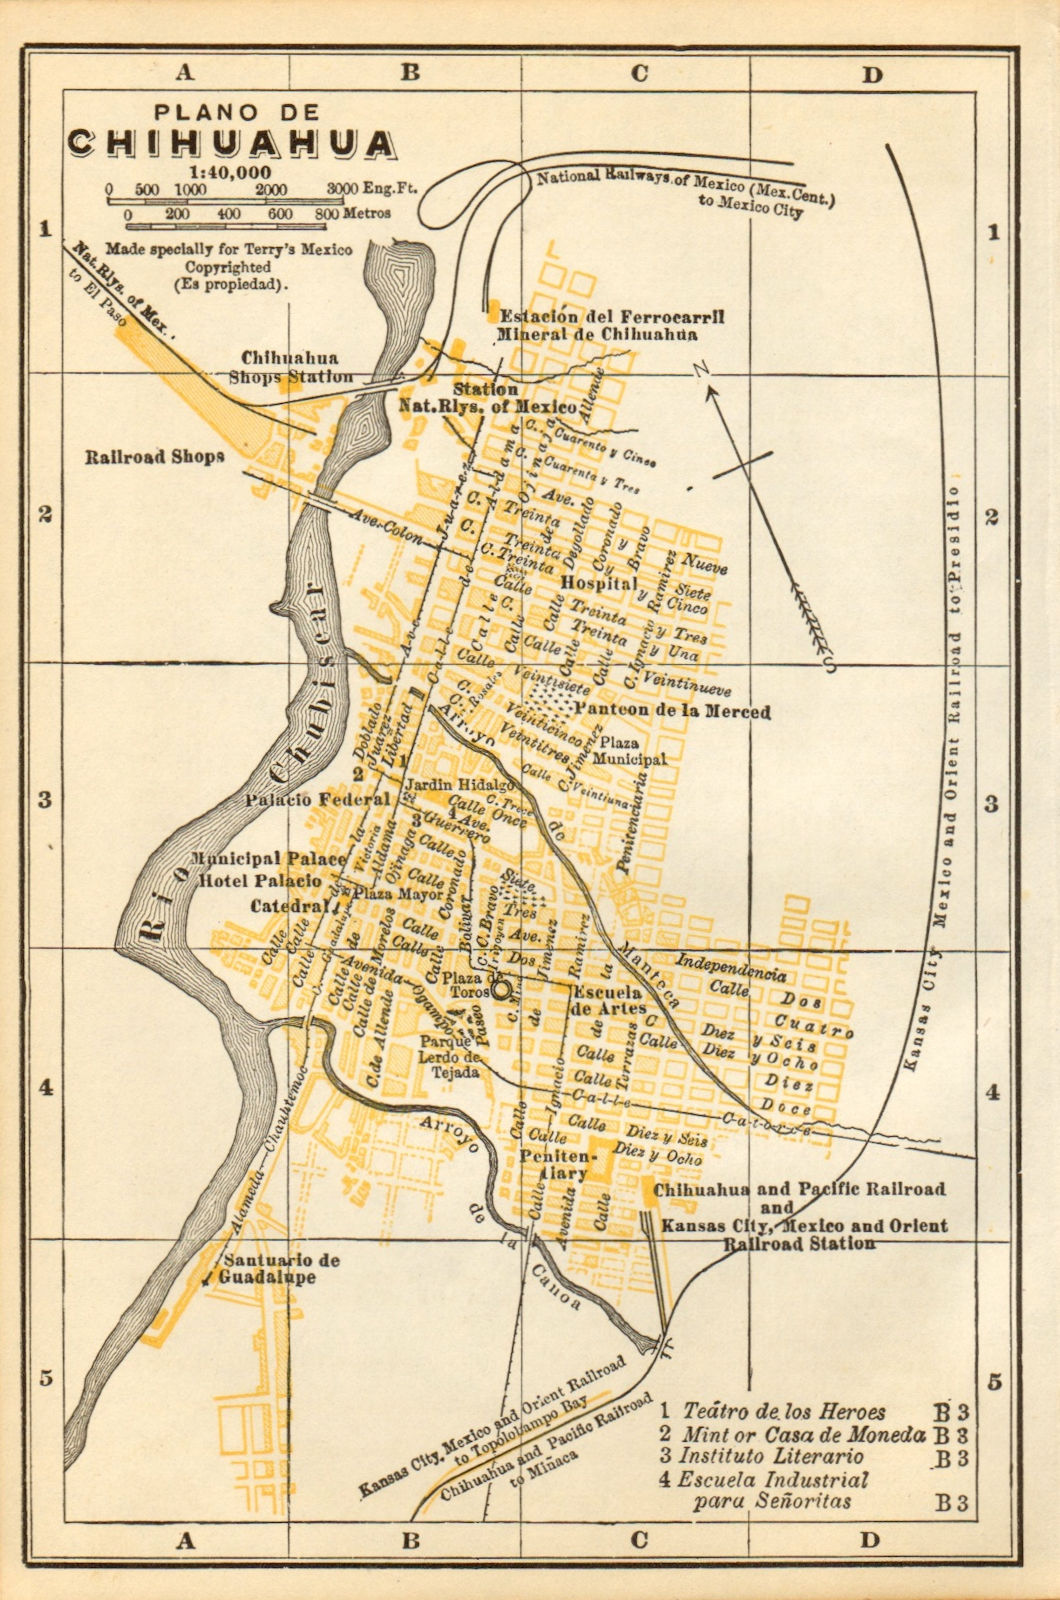 Plano de CHIHUAHUA, Mexico. Mapa de la ciudad. City/town plan 1935 old